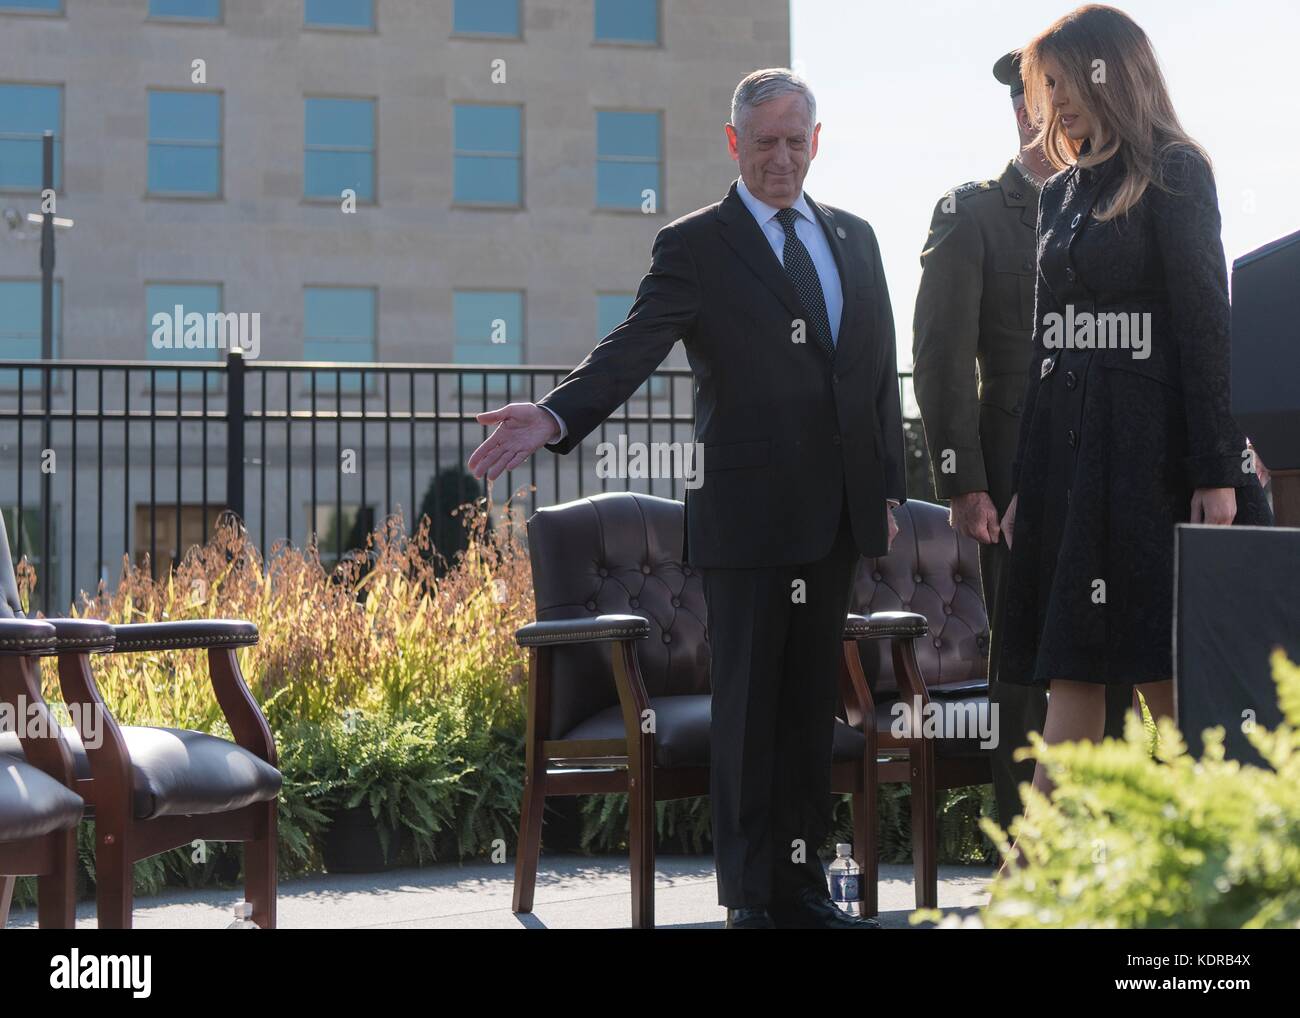 Us-Verteidigungsminister James Mattis und First Lady der USA melania Trump kommen an der 9/11 Einhaltung Zeremonie am Pentagon am 11. September 2017 in Washington, DC. Stockfoto